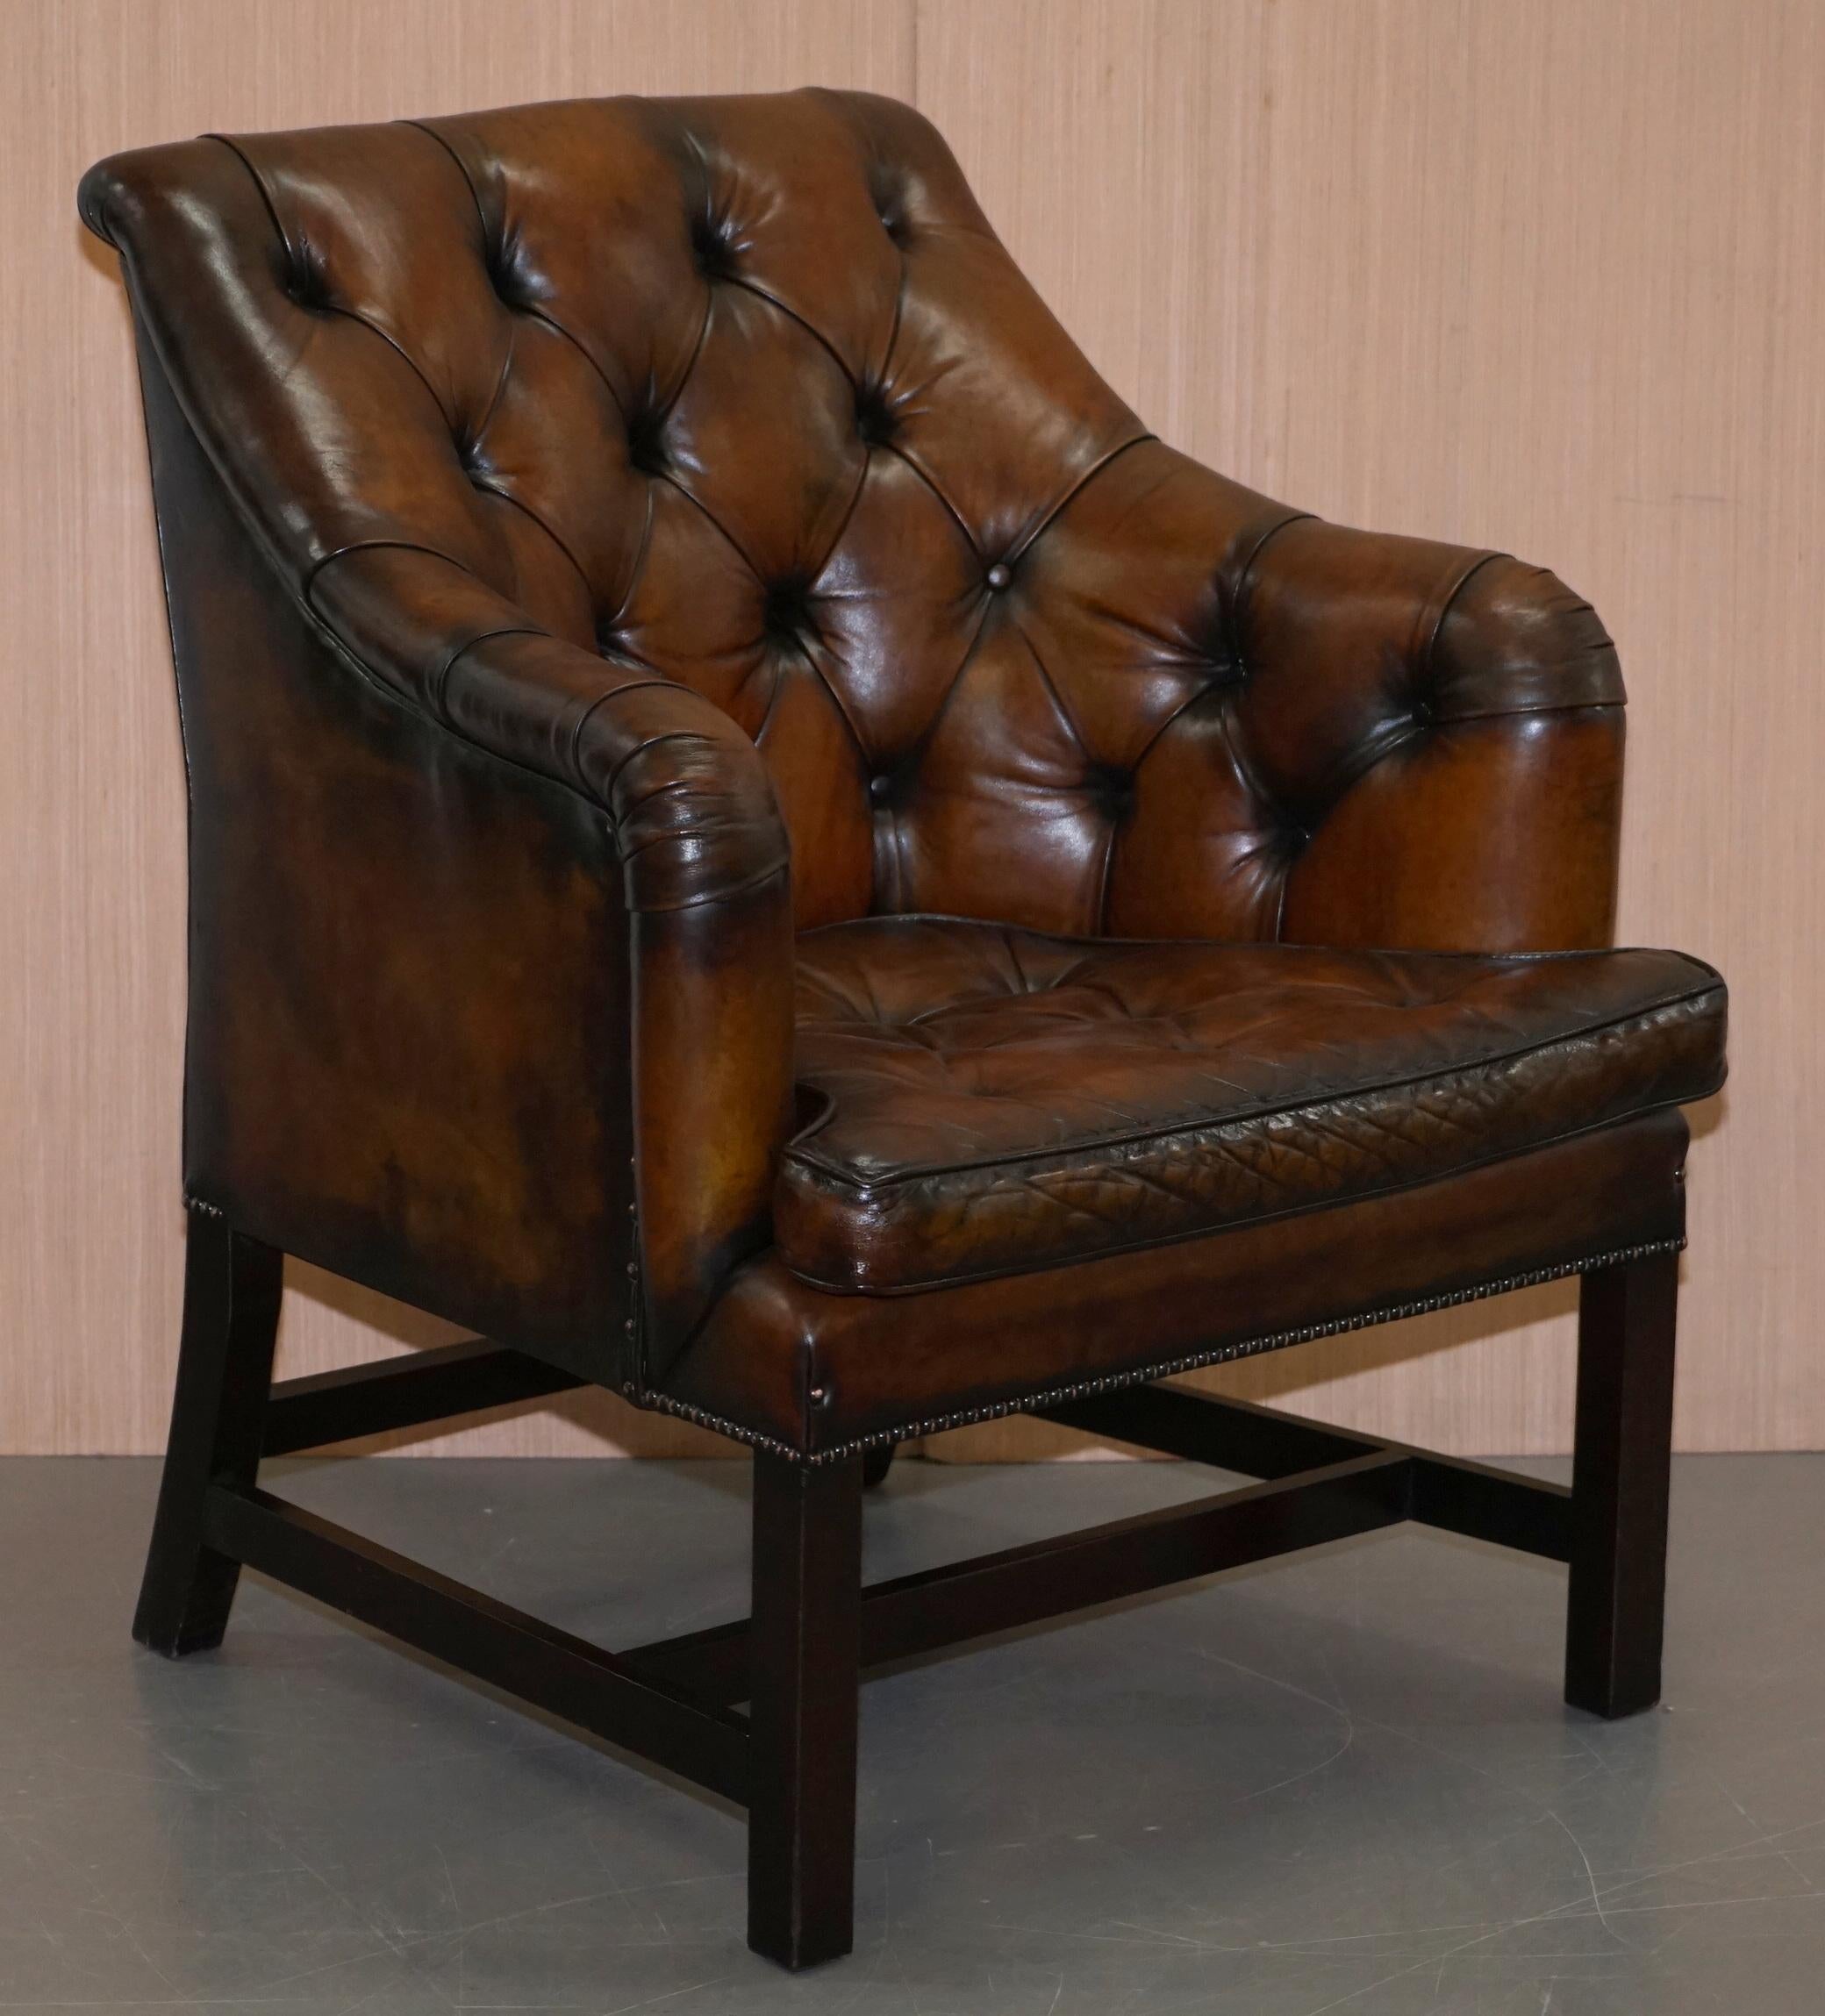 Wir freuen uns, dieses atemberaubende Paar vollständig restaurierter George Smith Whiskey braun georgianischen Stil Occasional oder Schreibtisch Sessel RRP £ 10.400 für das Paar zum Verkauf anbieten.

Dieser Sessel ist ein wahres Meisterwerk. Er